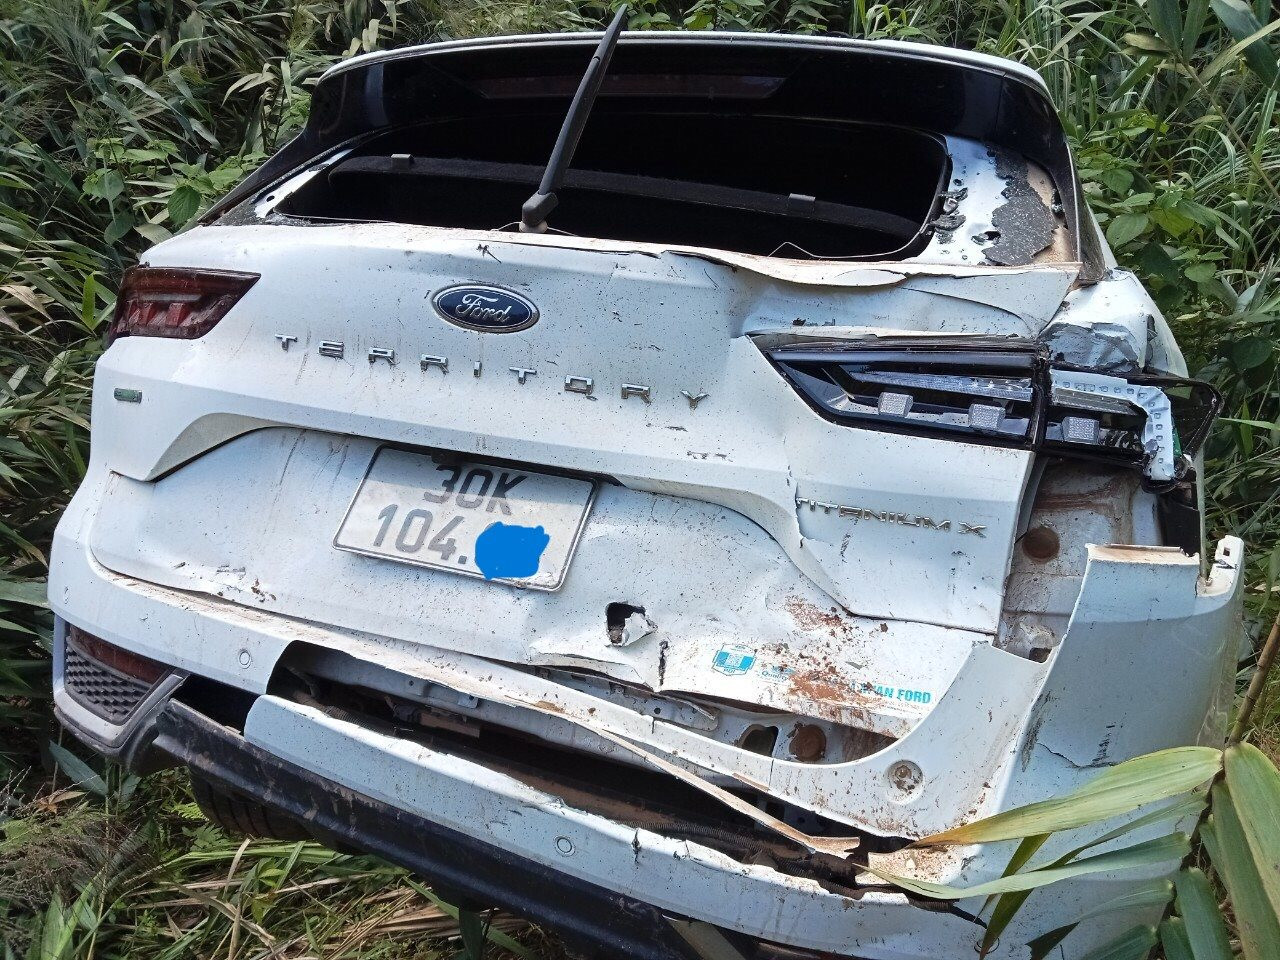 Ứng cứu xe ô tô mang biển số Hà Nội bị tai nạn ở Quảng Trị - Ảnh 1.